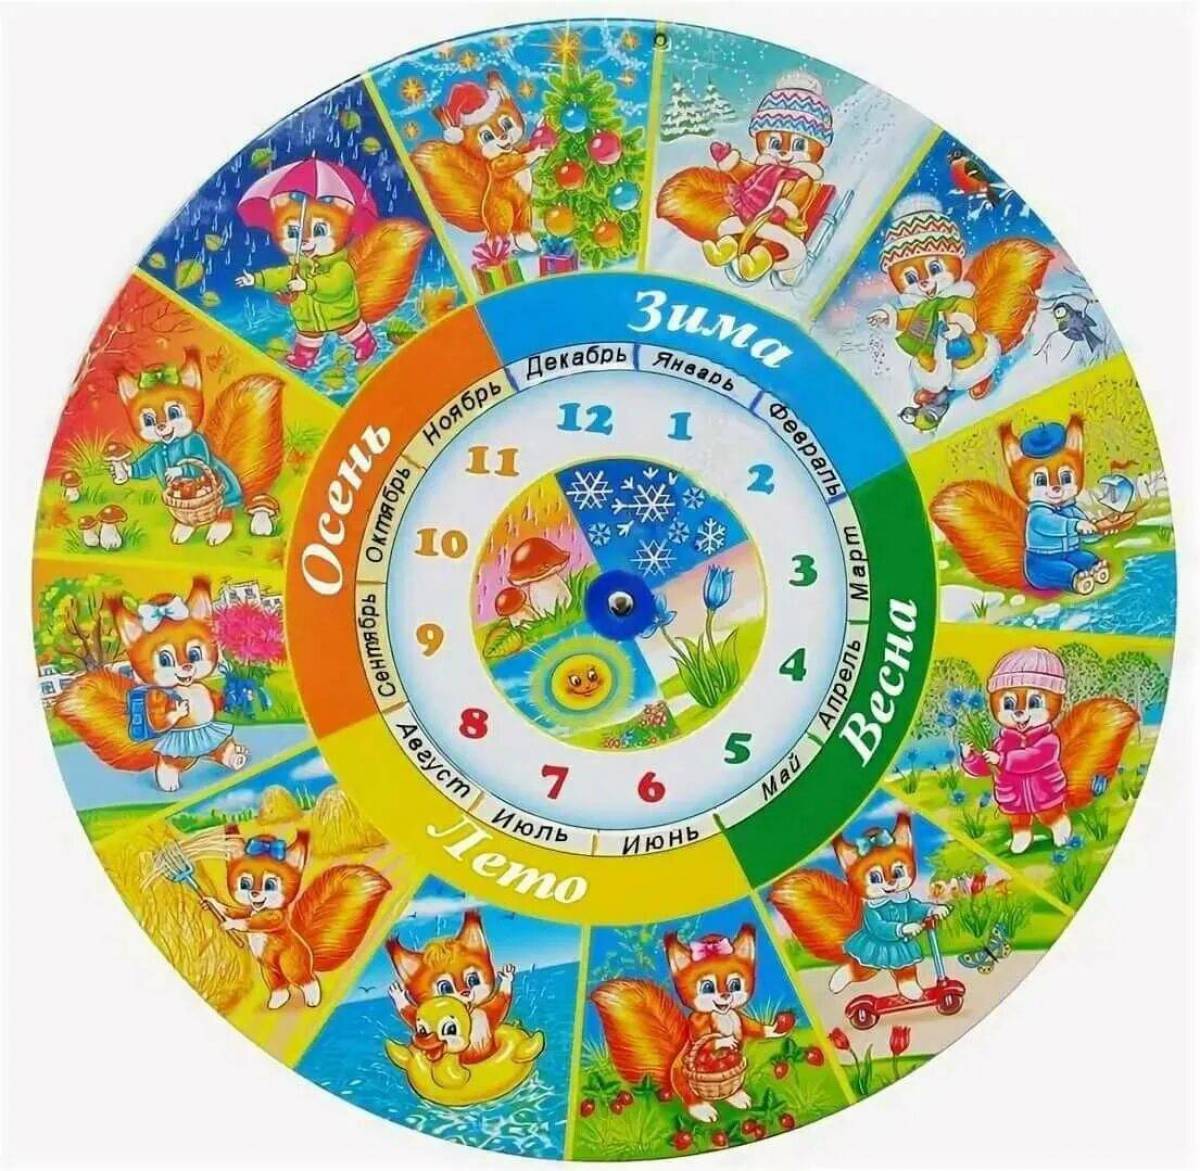 Пусть круглый год. Календарь времена года. Круглый календарь для детей. Изображения времен года для детей. Календарь времен года для детского сада.